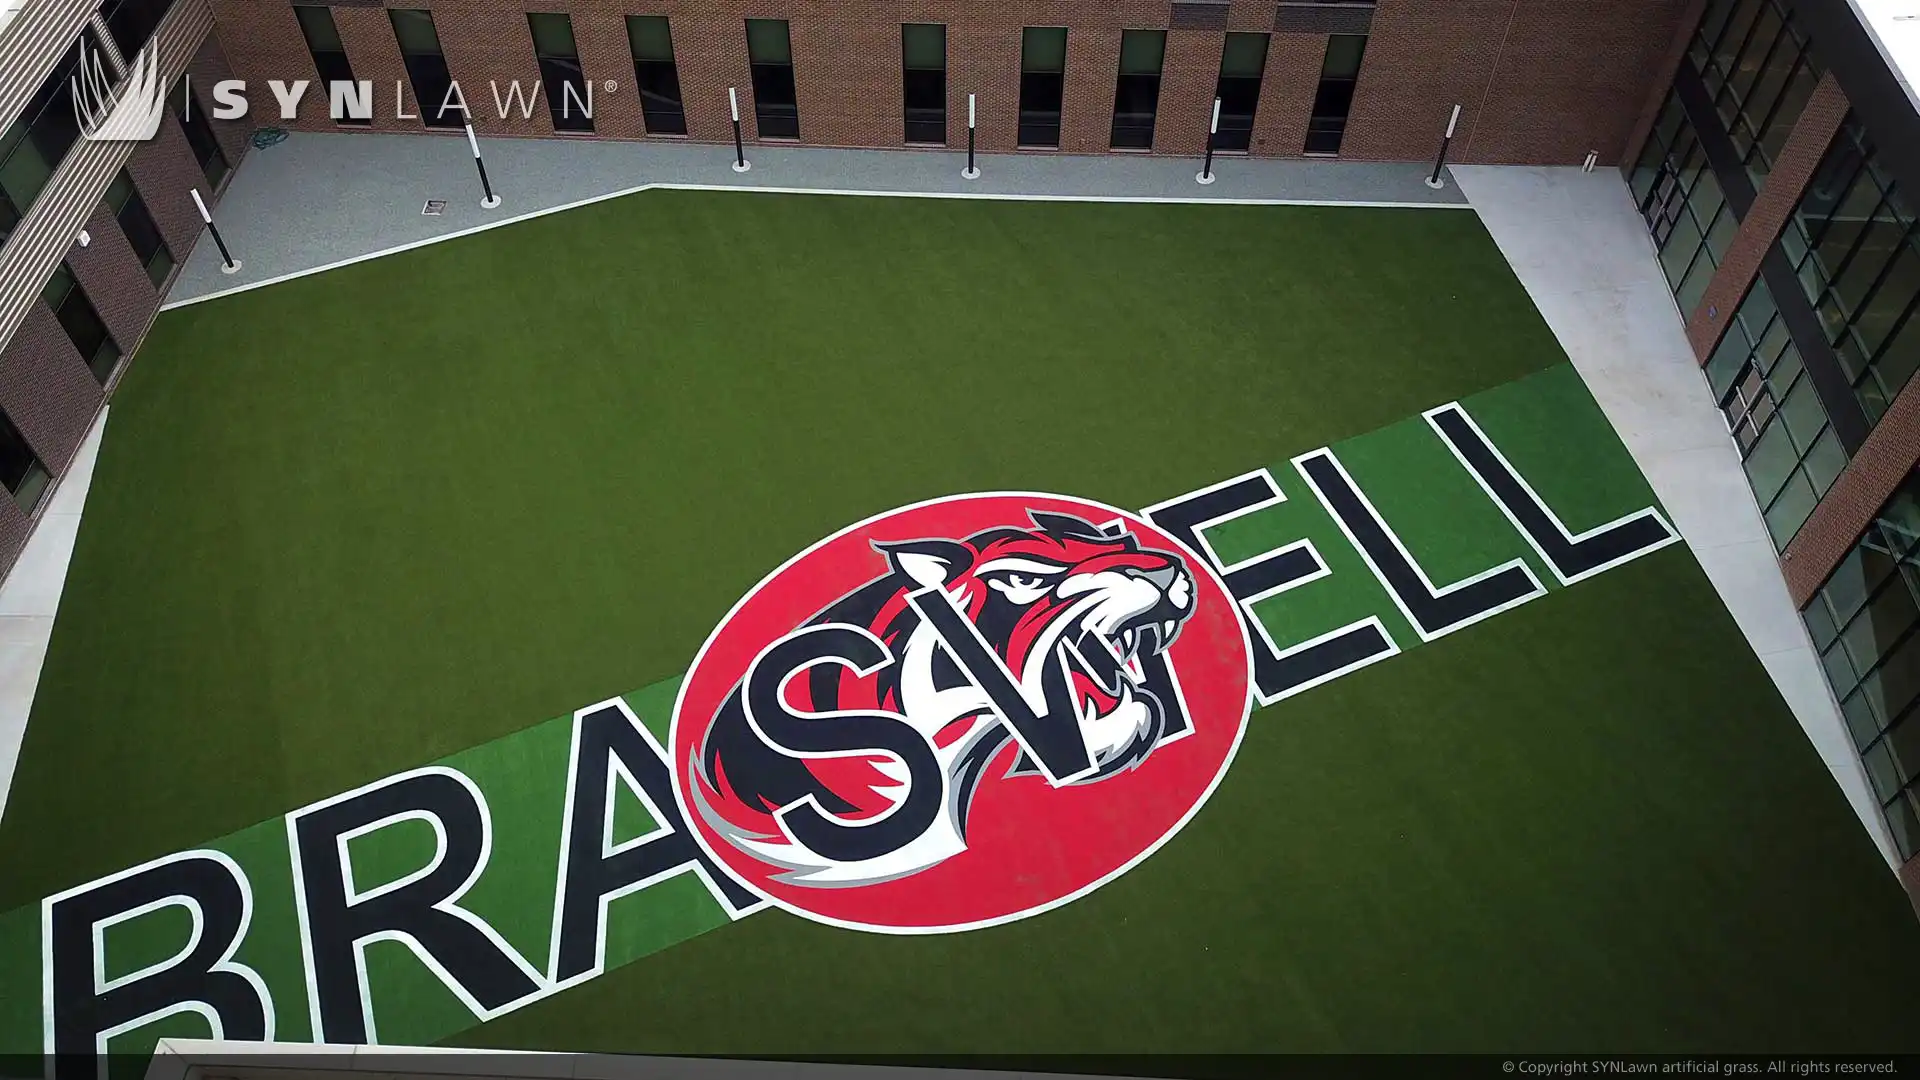 Une école secondaire du Texas rehausse son image avec des logos en herbe incrustés et des zones de loisirs multi-usages